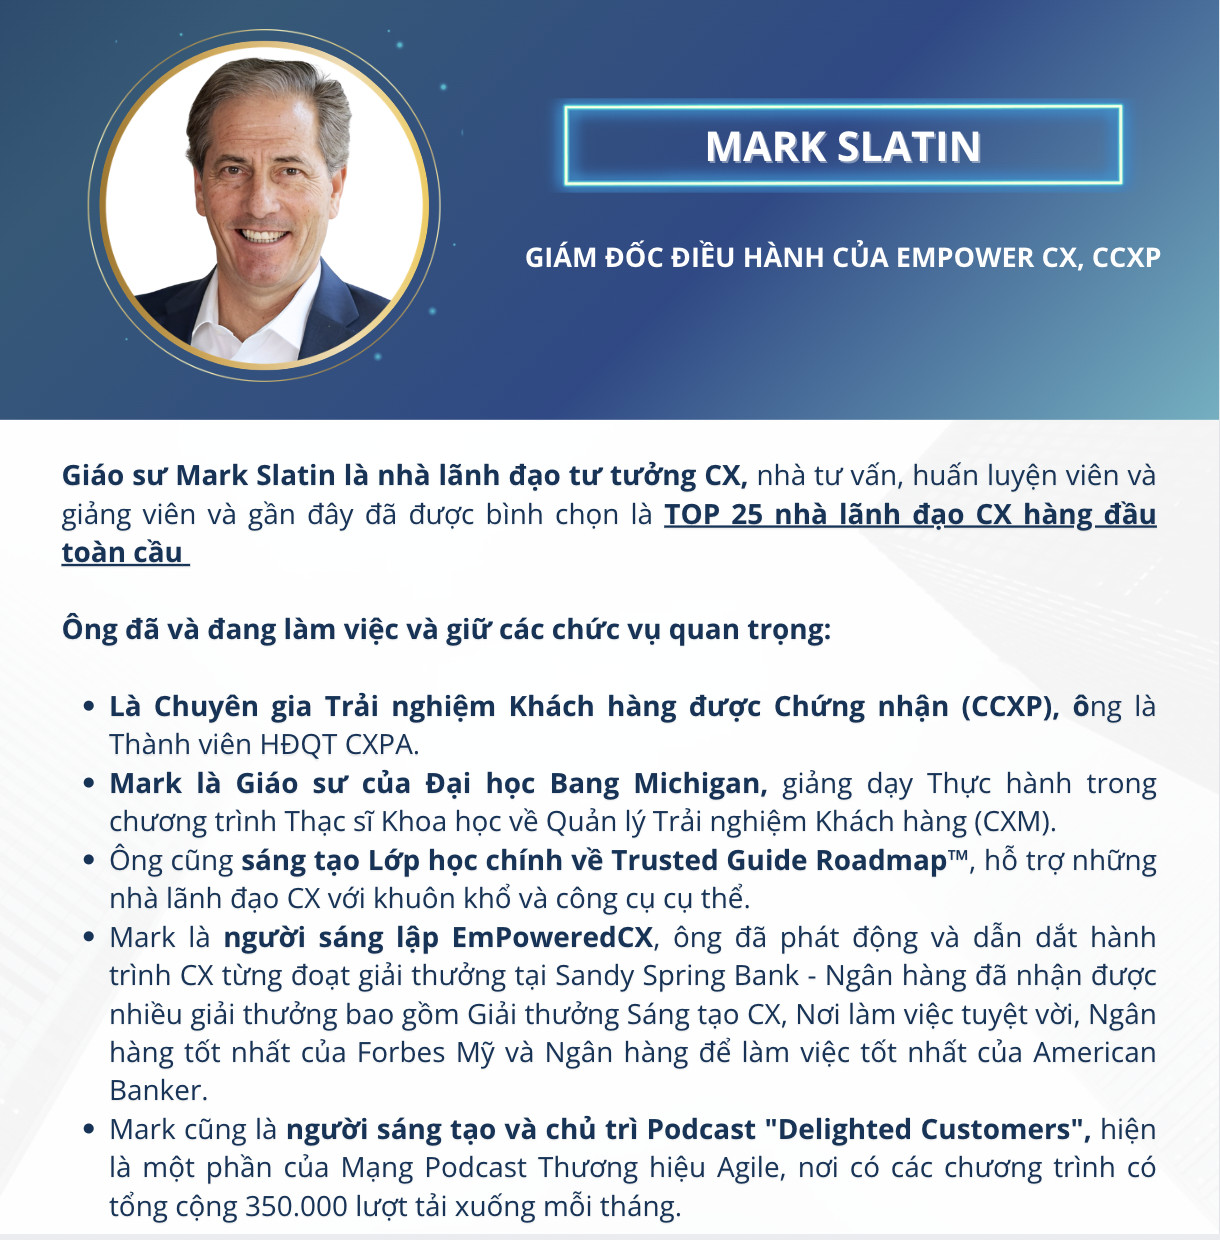 Mark Slatin – Giám đốc điều hành của Empower CX, CCXP (Giảng viên khóa học CXM - Quản trị trải nghiệm khách hàng MSU & FPT)